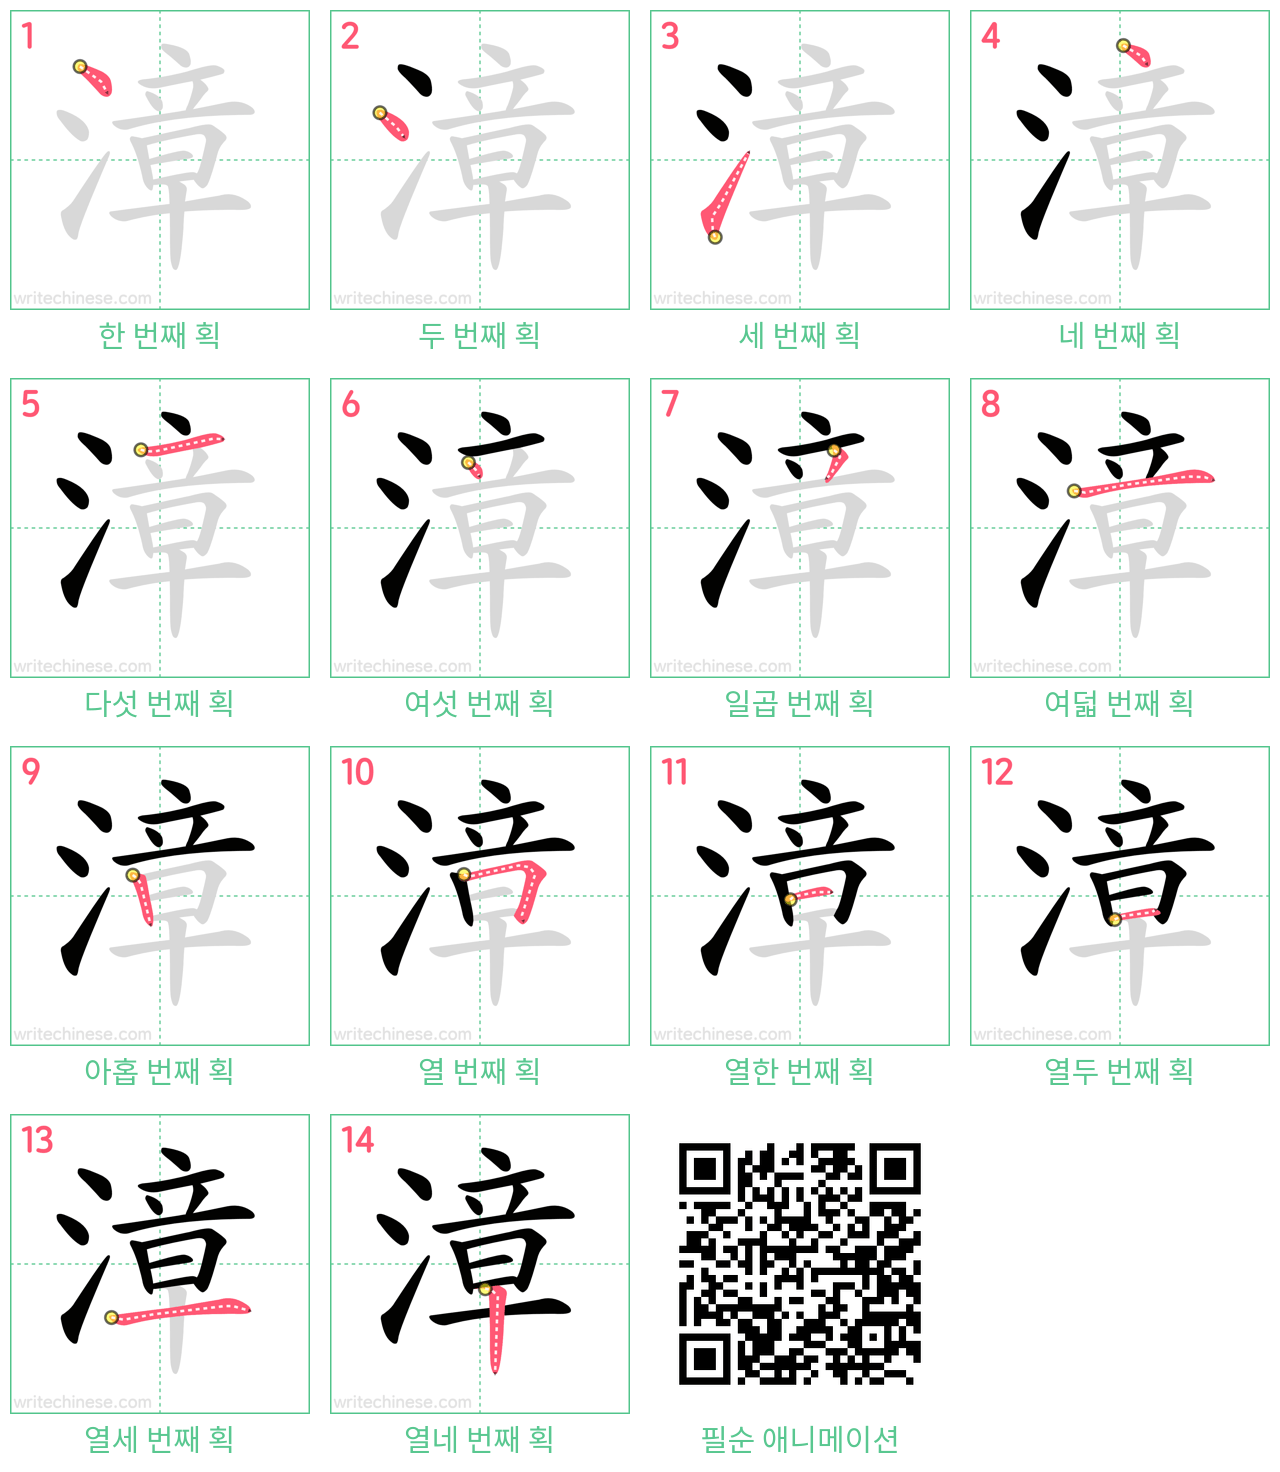 漳 step-by-step stroke order diagrams